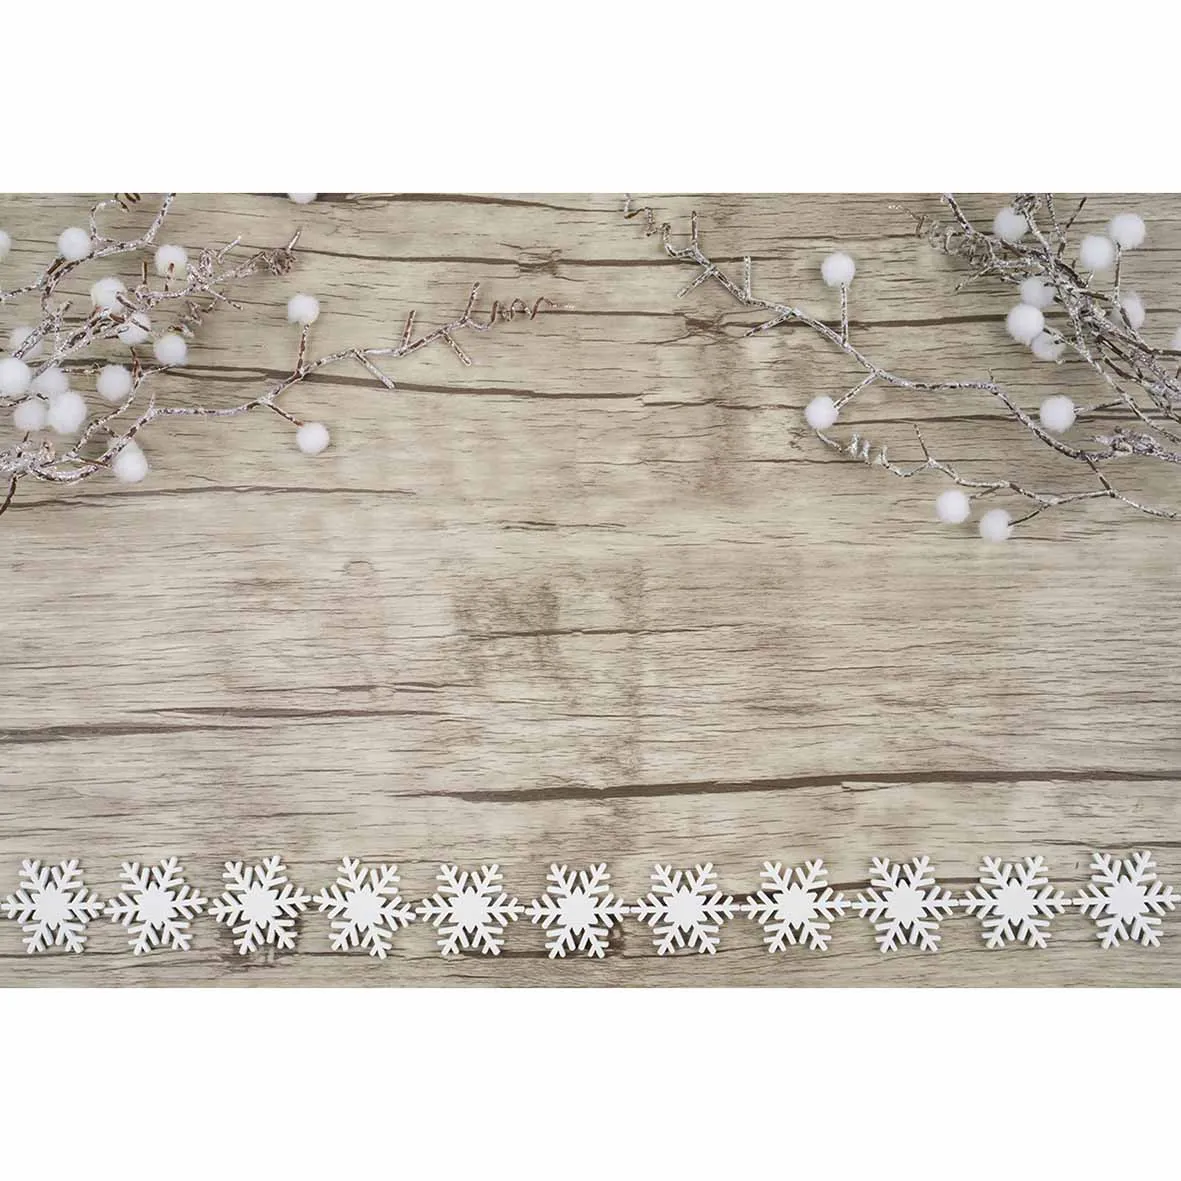 Allenjoy яркая винтажная деревянная доска с декоративными белыми снежными кристаллами ветви белые шары зимний фон для фотостудии